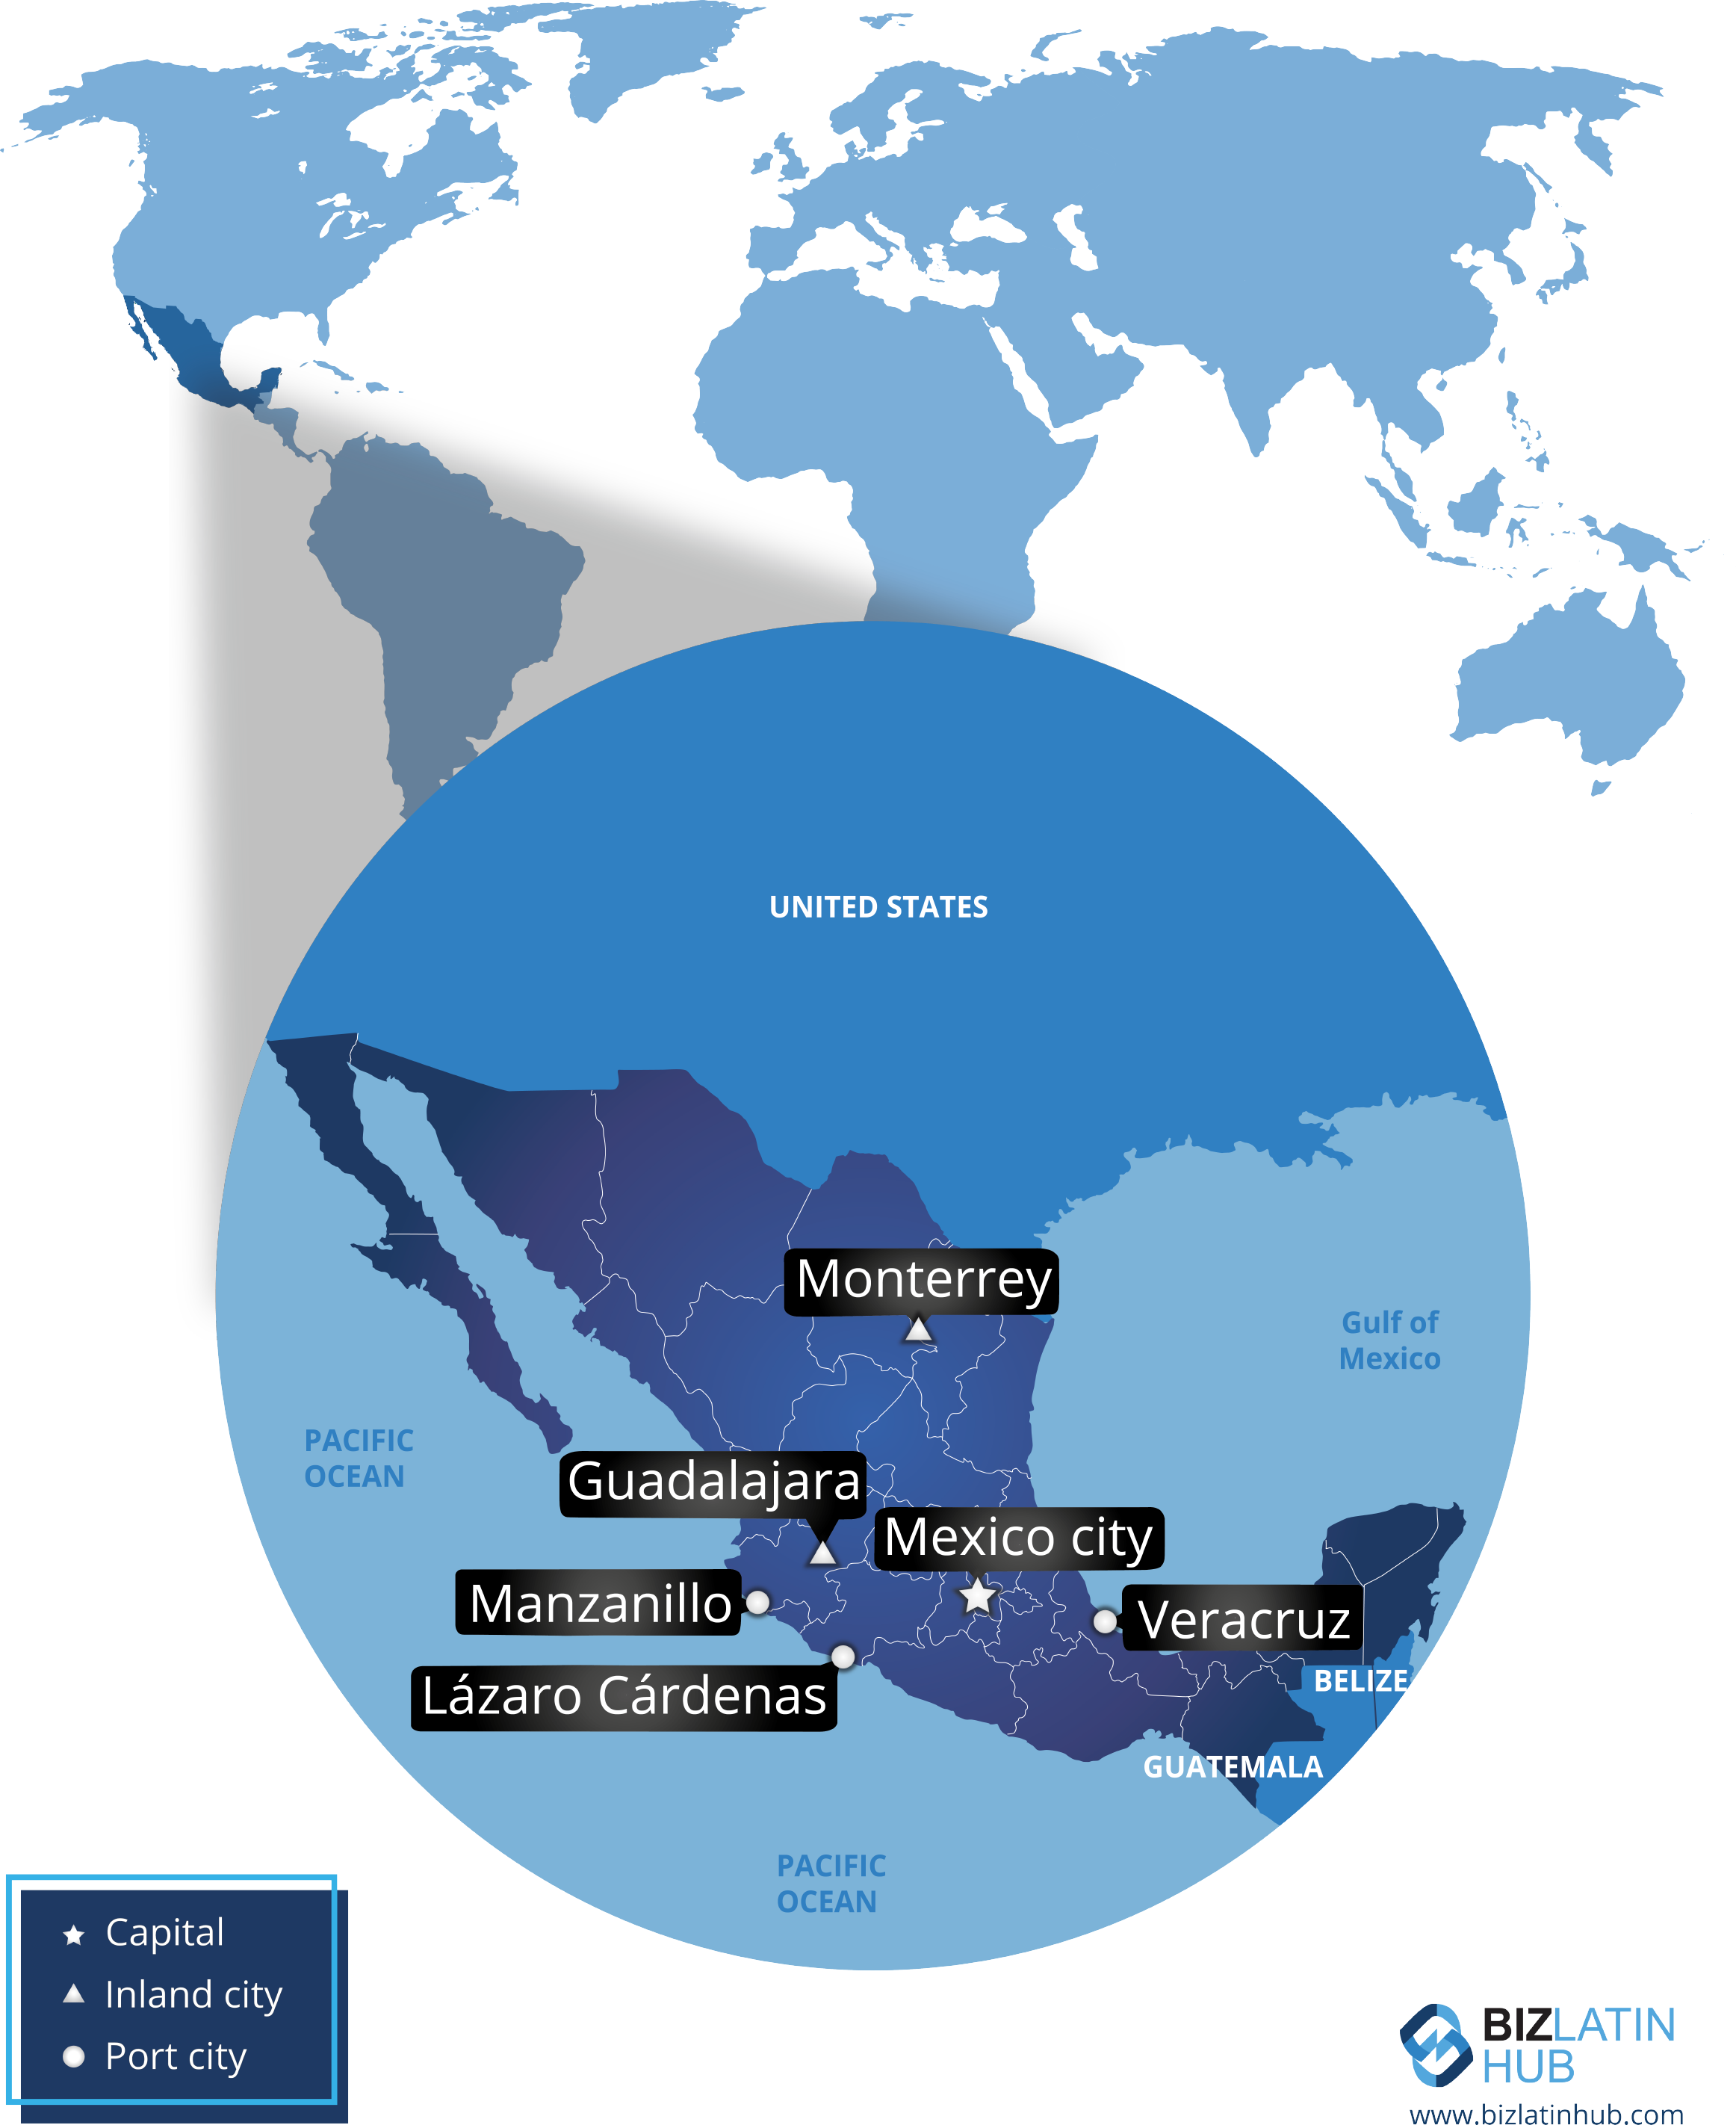 mapa de mexico y sus principales ciudades por biz latin hub